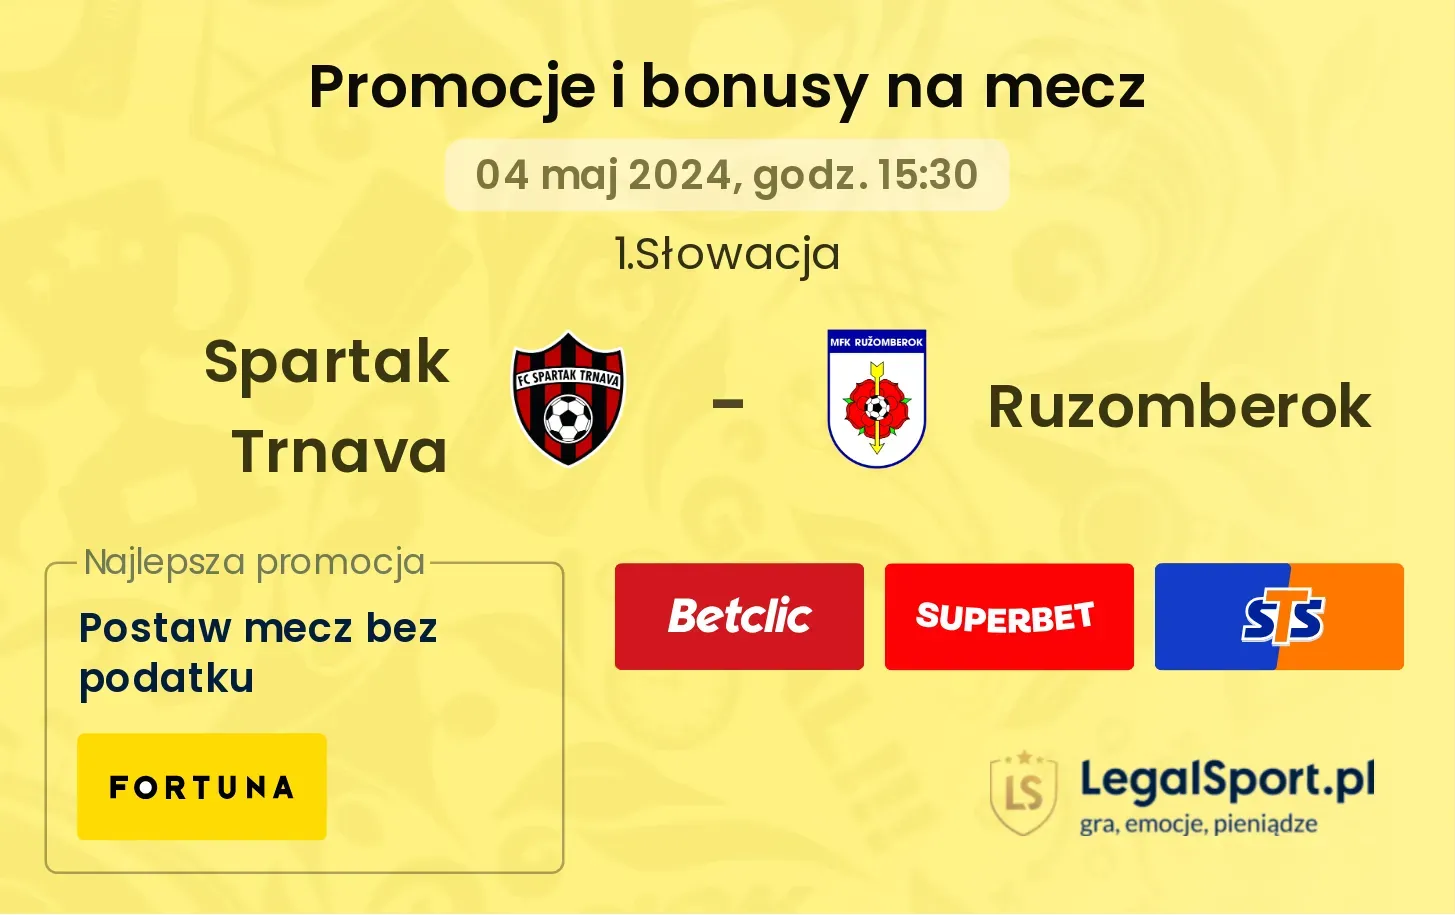 Spartak Trnava - Ruzomberok promocje bonusy na mecz